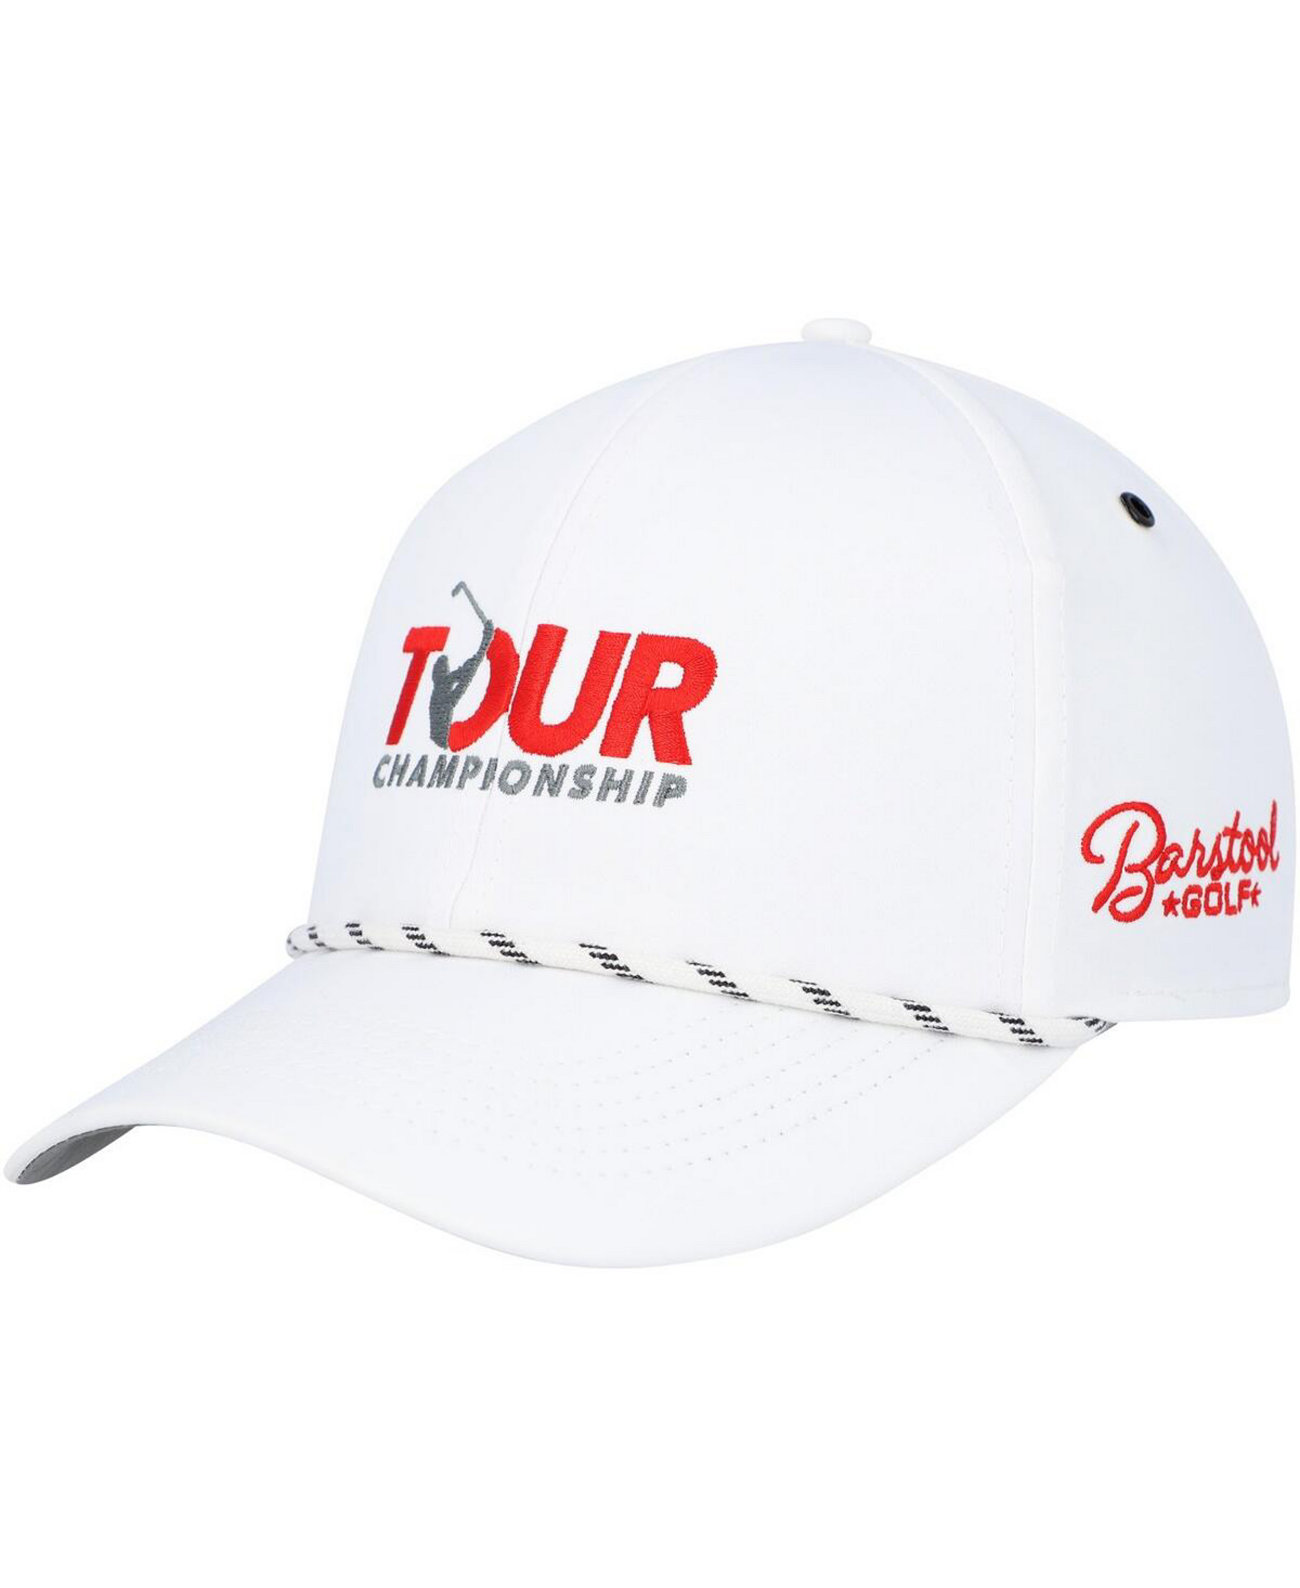 Мужская белая регулируемая кепка TOUR Championship с нашивкой Trucker Barstool Golf